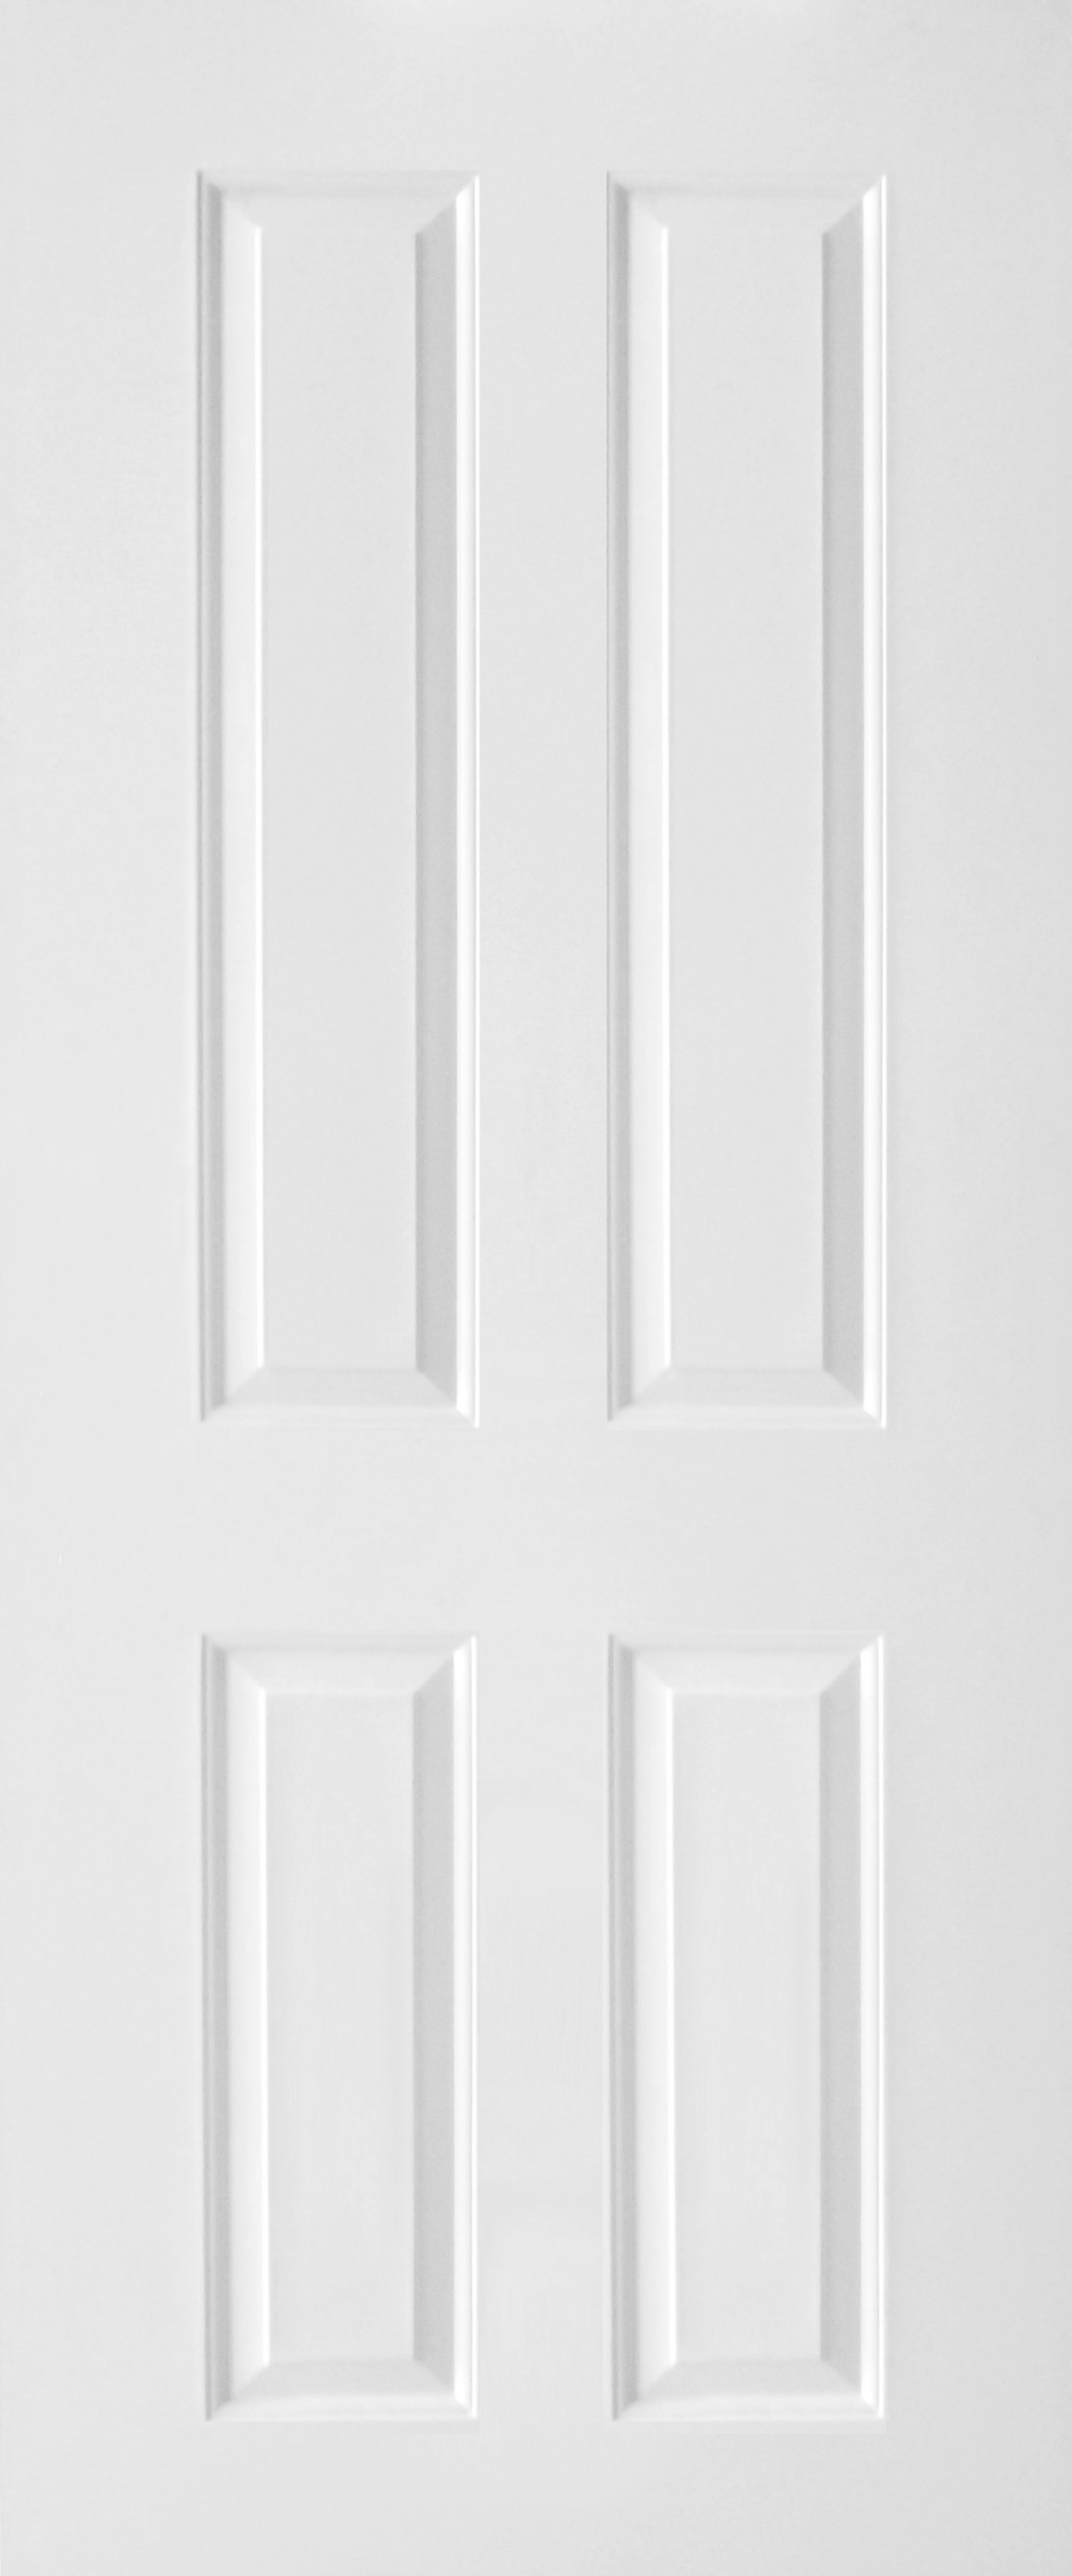 ประตูUPVC ผิวหน้าลายไม้ สีขาว บานลูกฟัก 4 ช่องตรง